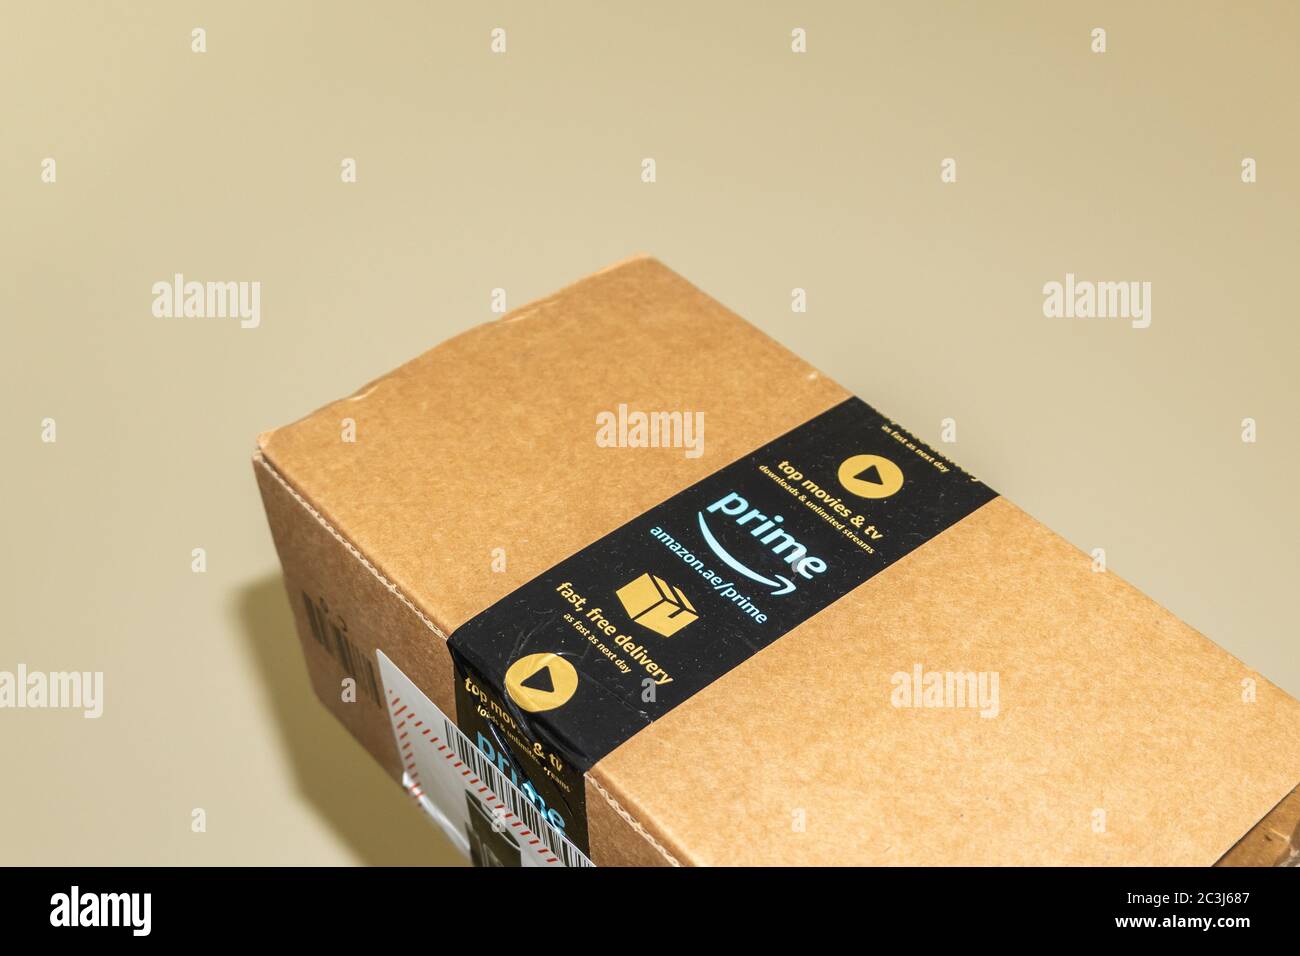 RAK, RAK/UAE - 18. Mai 2020: Amazon Prime Online Versand Box Lieferung in  den Vereinigten Arabischen Emiraten (UAE). ' Stockfotografie - Alamy